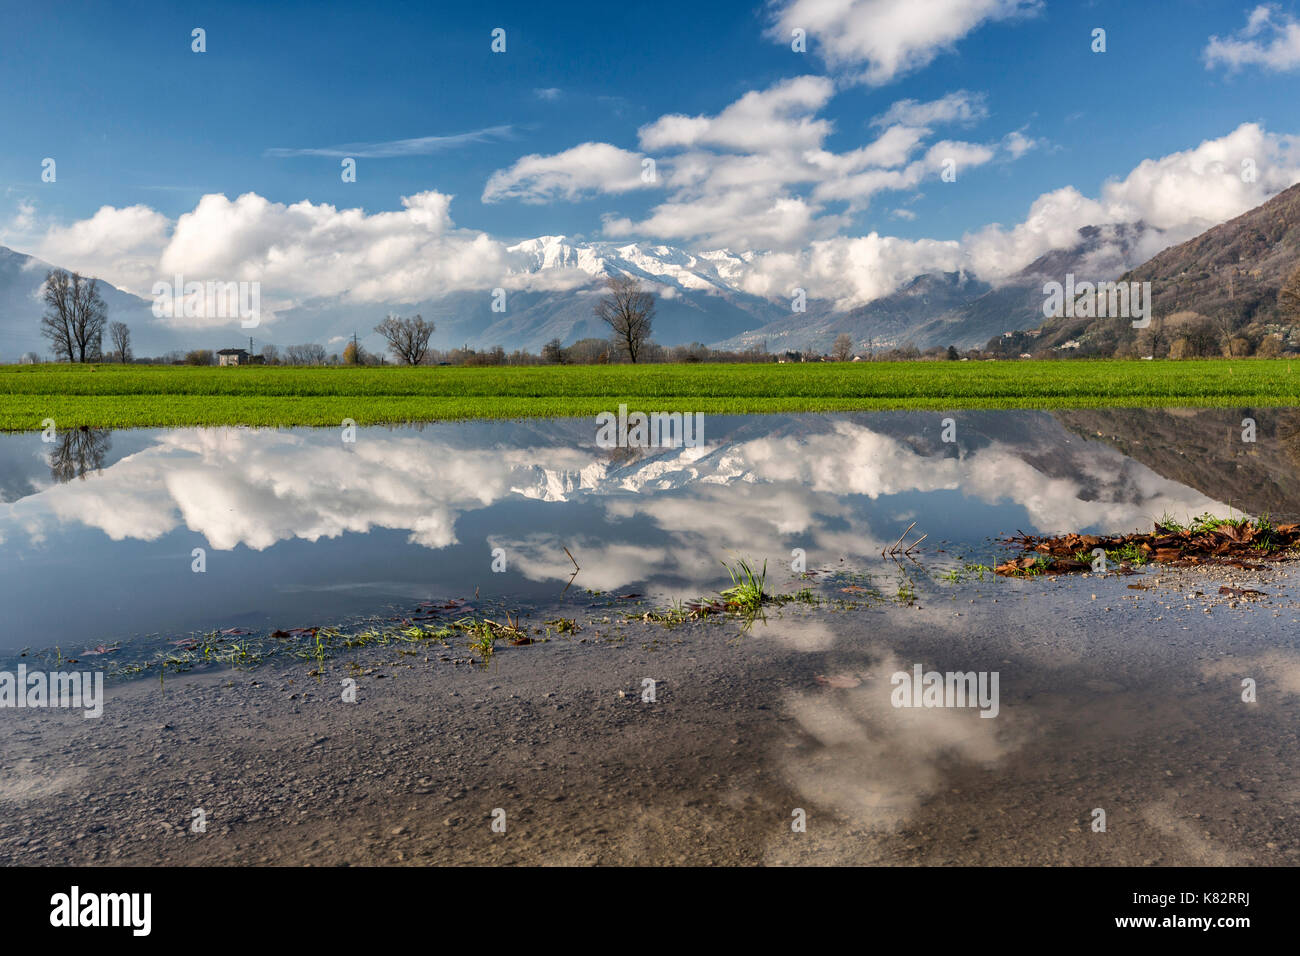 La reserva natural de Pian di Spagna inundado con picos nevados se reflejan en el agua valtellina Lombardía Italia Europa Foto de stock